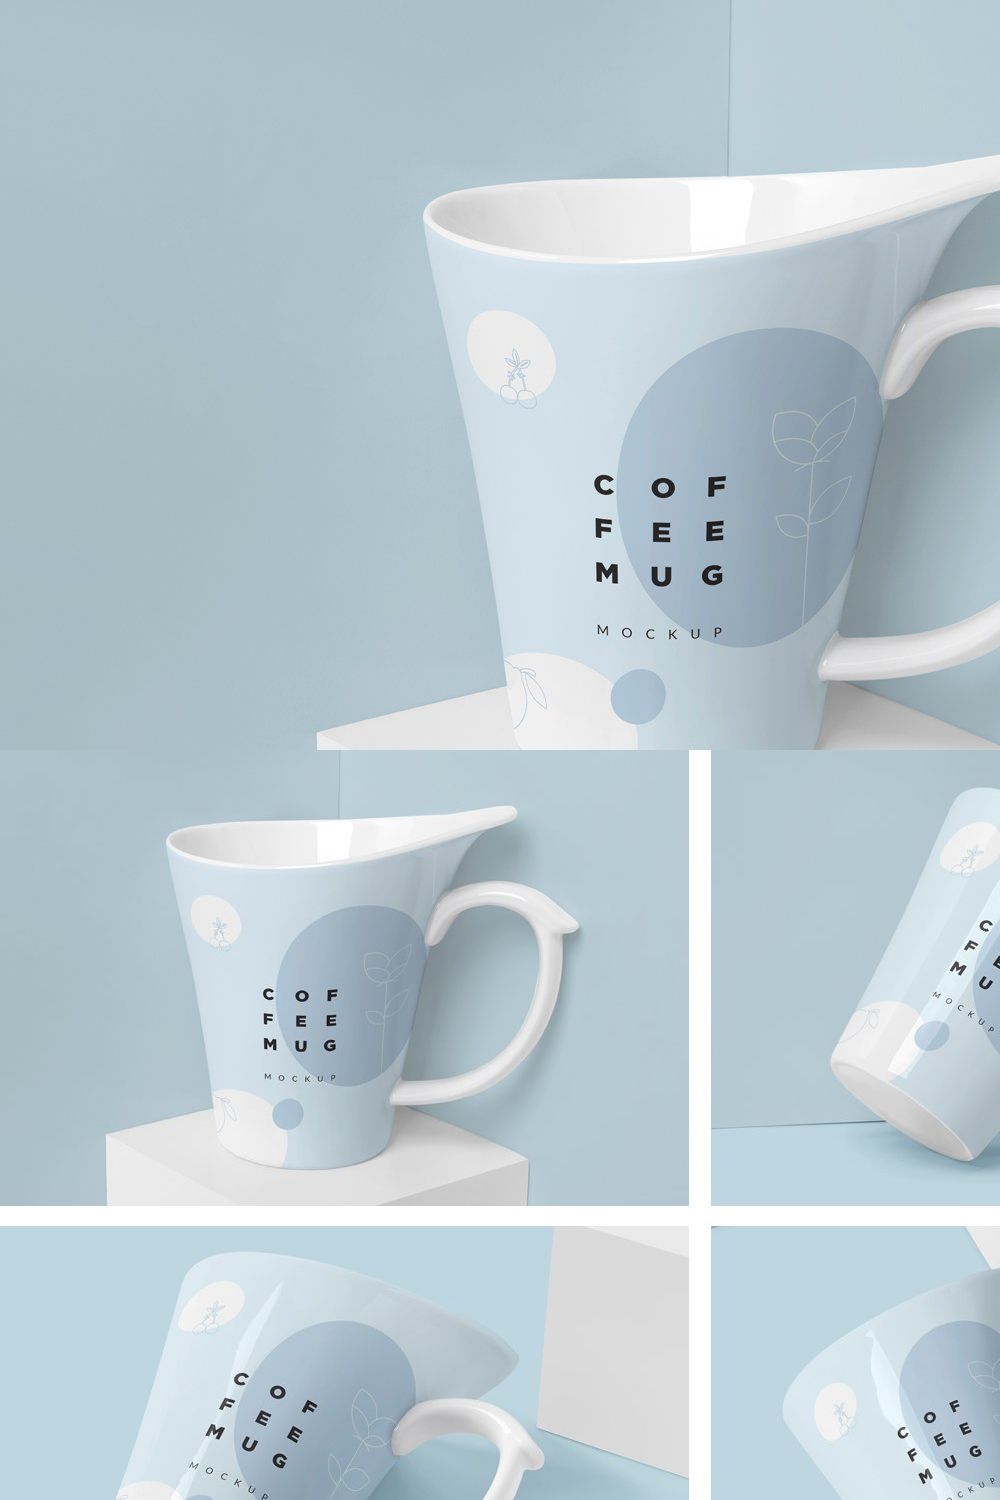 4 Awesome Coffee Mug Mockups pinterest preview image.